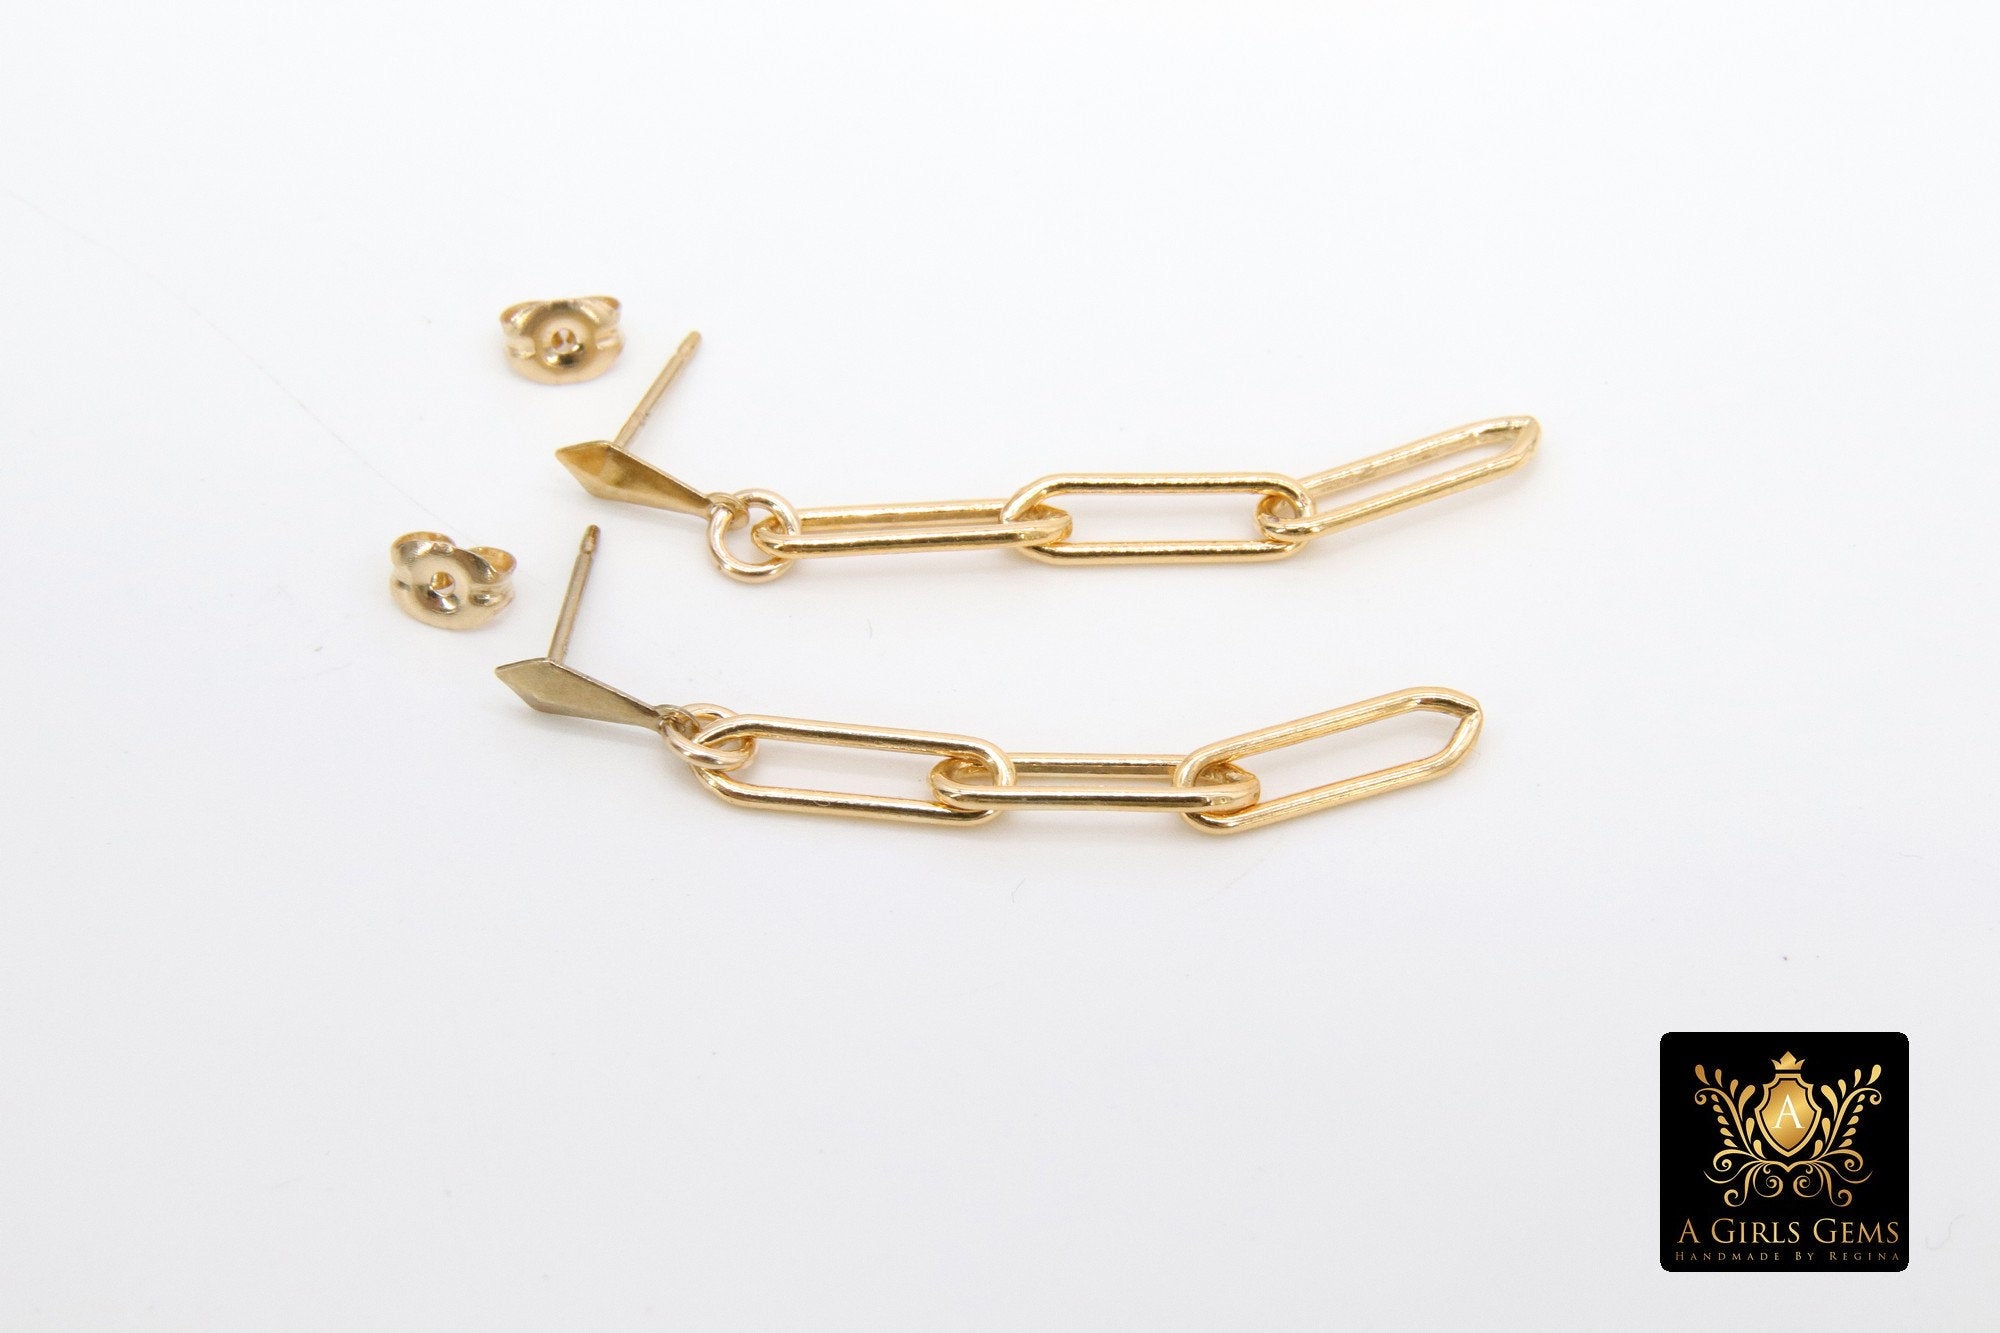 14 K Gold Filled Paperclip Chain Earrings, Rectangle Link Stud Posts, Gold Drop Dangle Earrings, Minimalist Earrings, Simple Gold Earrings - A Girls Gems